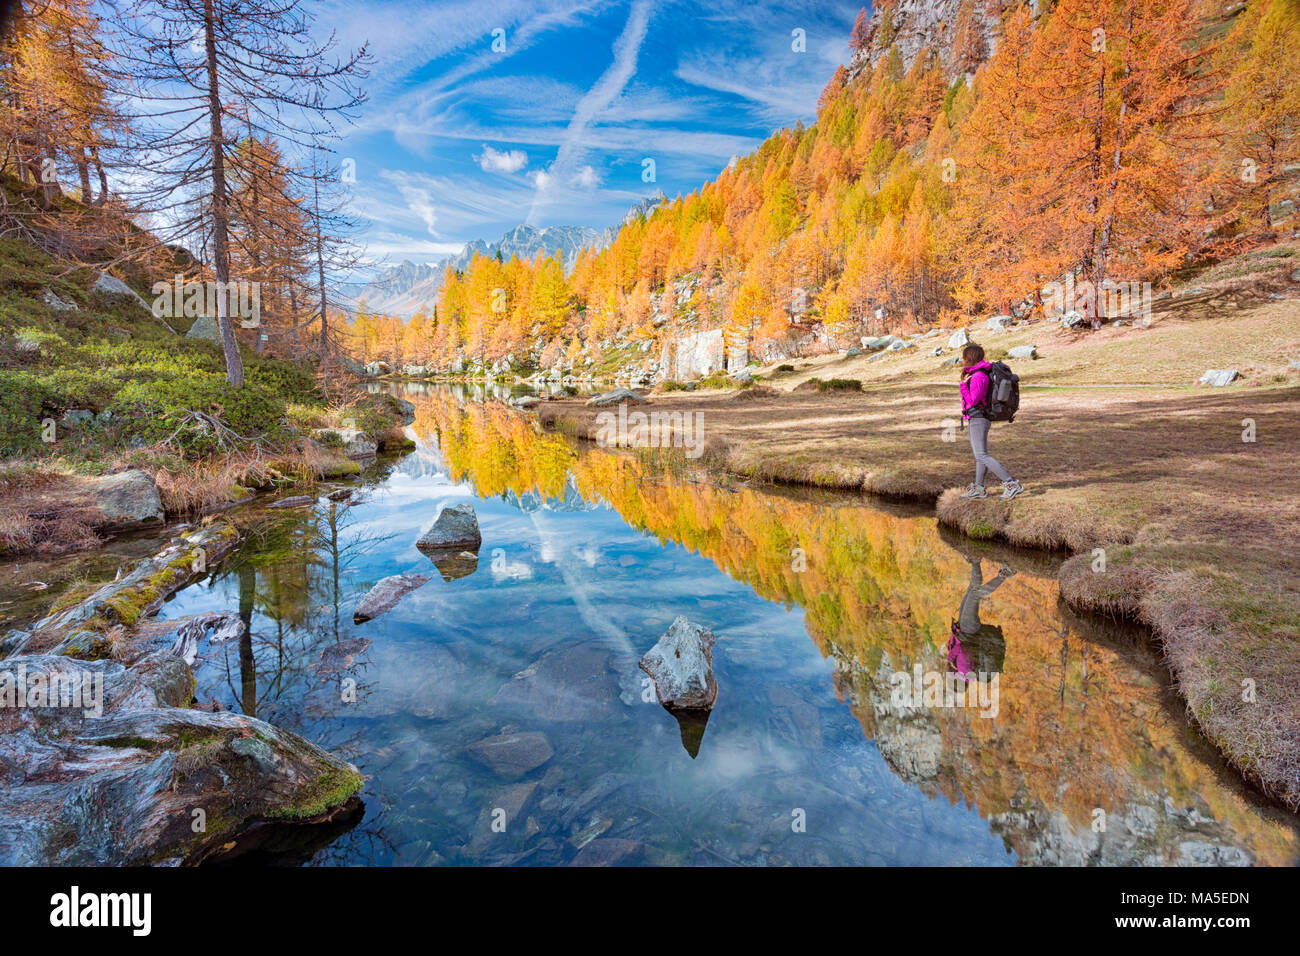 Un touriste à regarder le petit lac près de Crampiolo connu sous le nom de lac des sorcières, Alpe Veglia et parc naturel Alpe Devero, Baceno, Verbano Cusio Ossola province, Piémont, Italie Banque D'Images